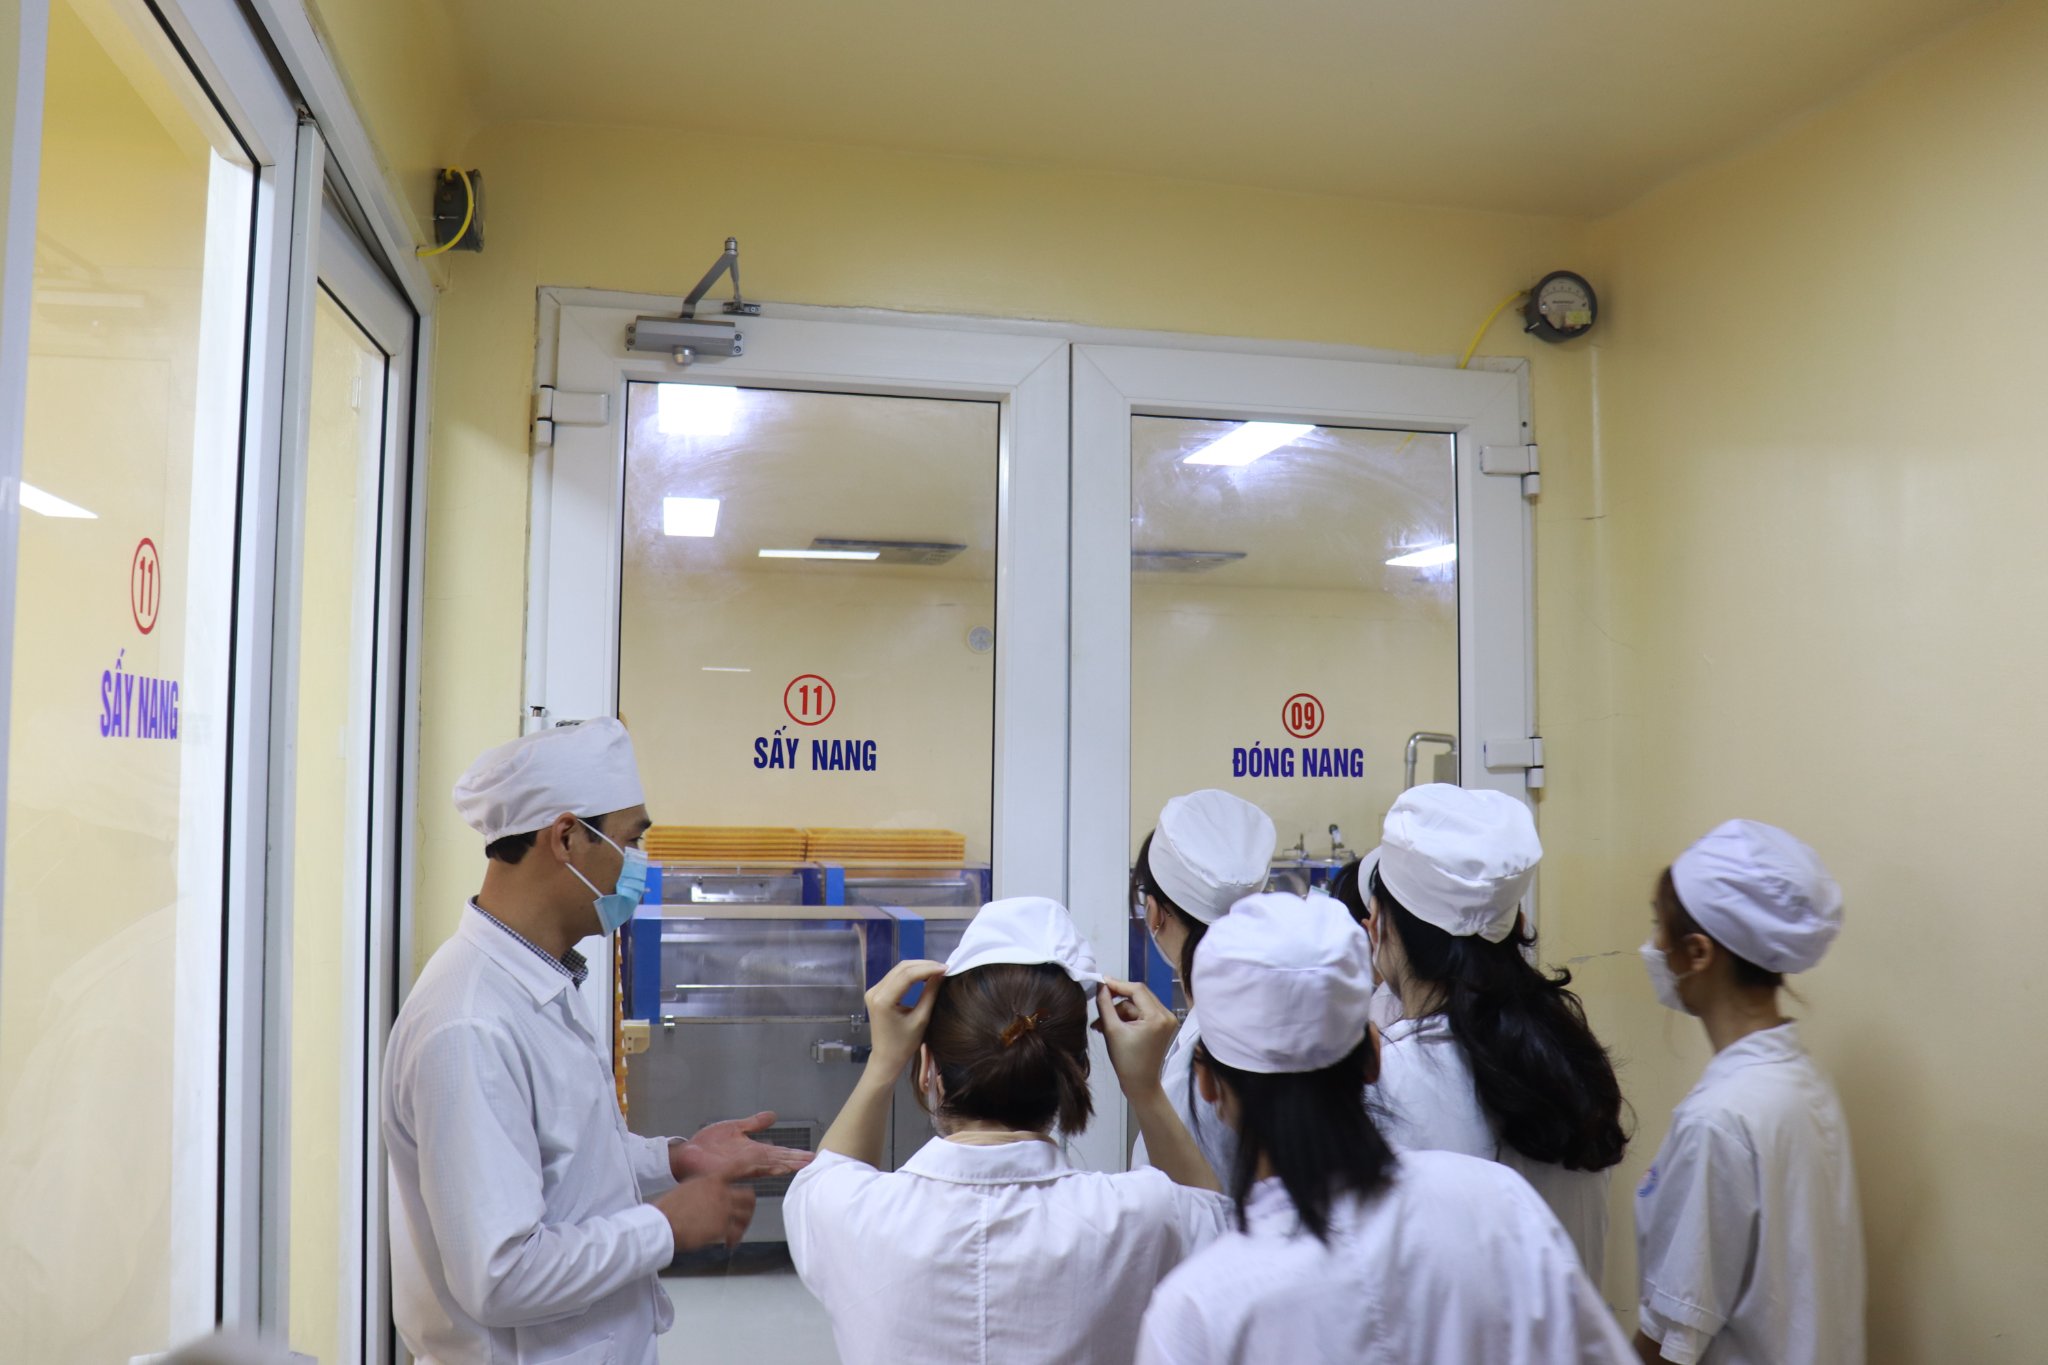 Tham quan quy trình sản xuất thuốc tại nhà máy thuốc – Cao Đẳng Kỹ Thuật Y Dược Hà Nội